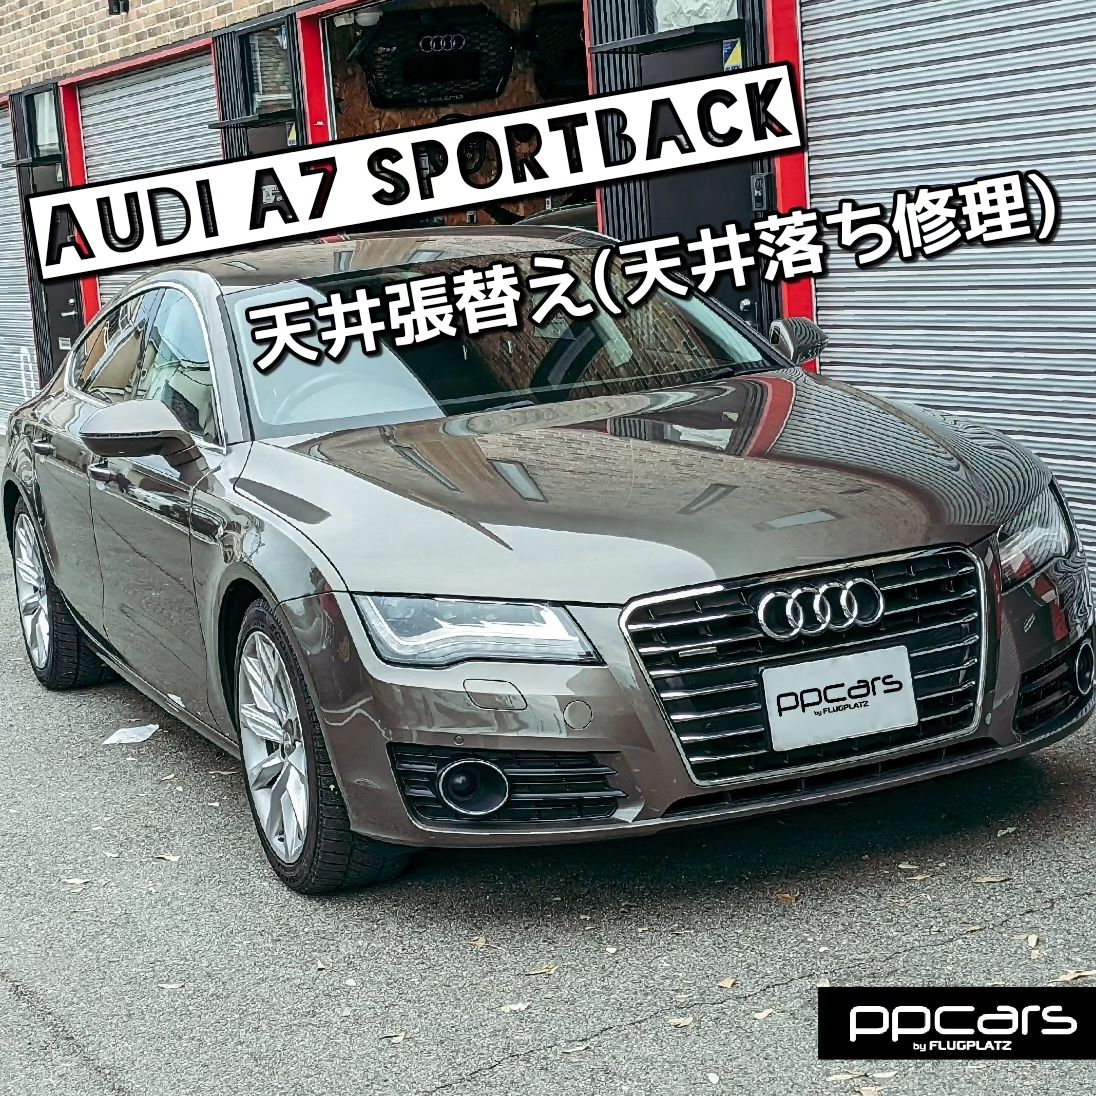 Audi A7(4G/C7) Sportback x 天張り(天井落ち)補修